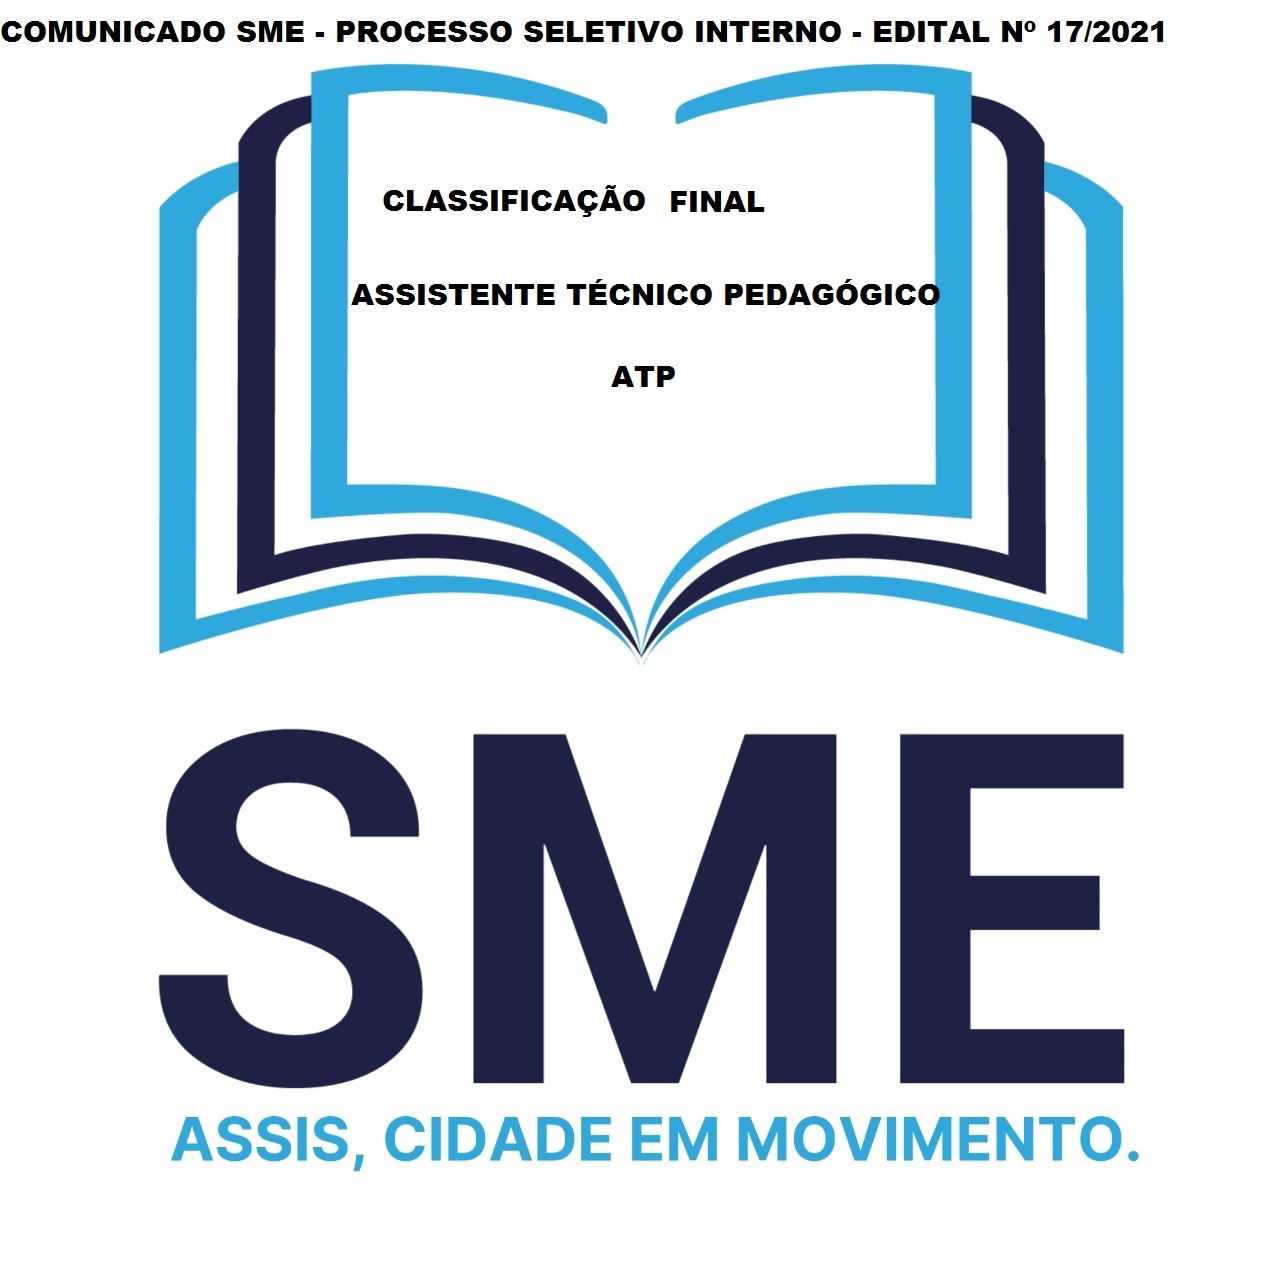 EDITAL SME Nº 17/2021 - CLASSIFICAÇÃO FINAL - ATP